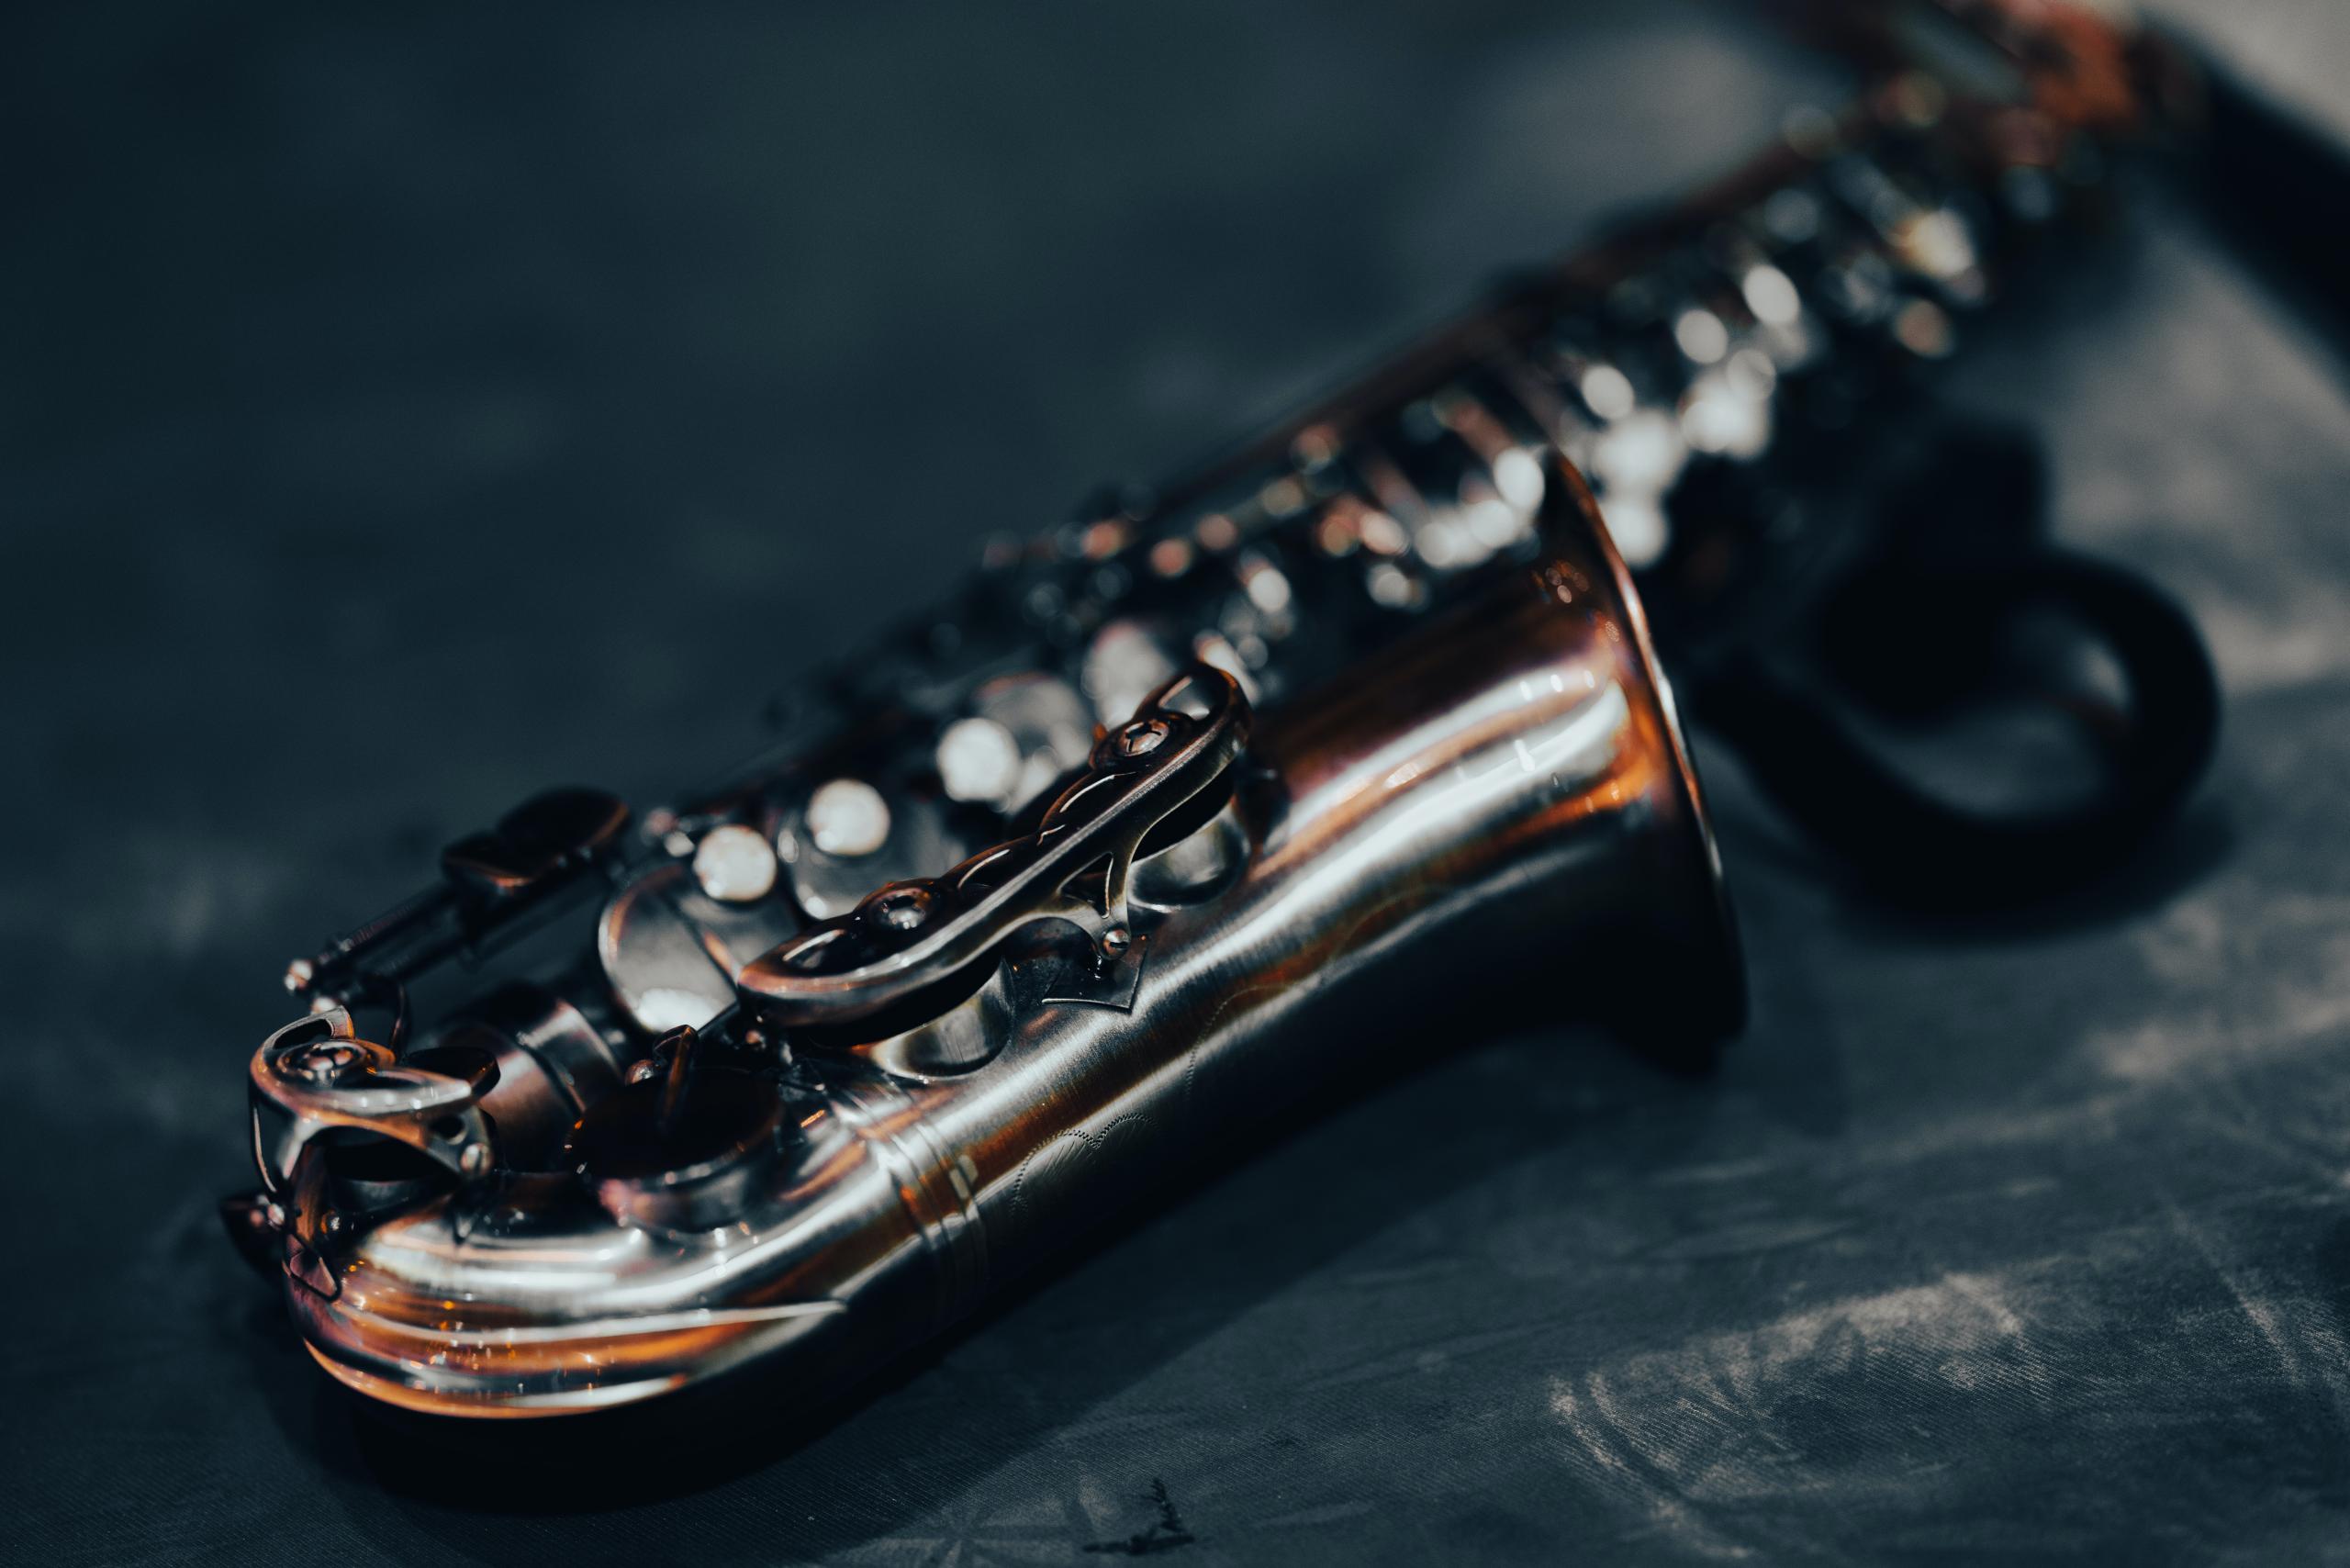 Ein Altsaxophon liegt auf einem dunklen Boden